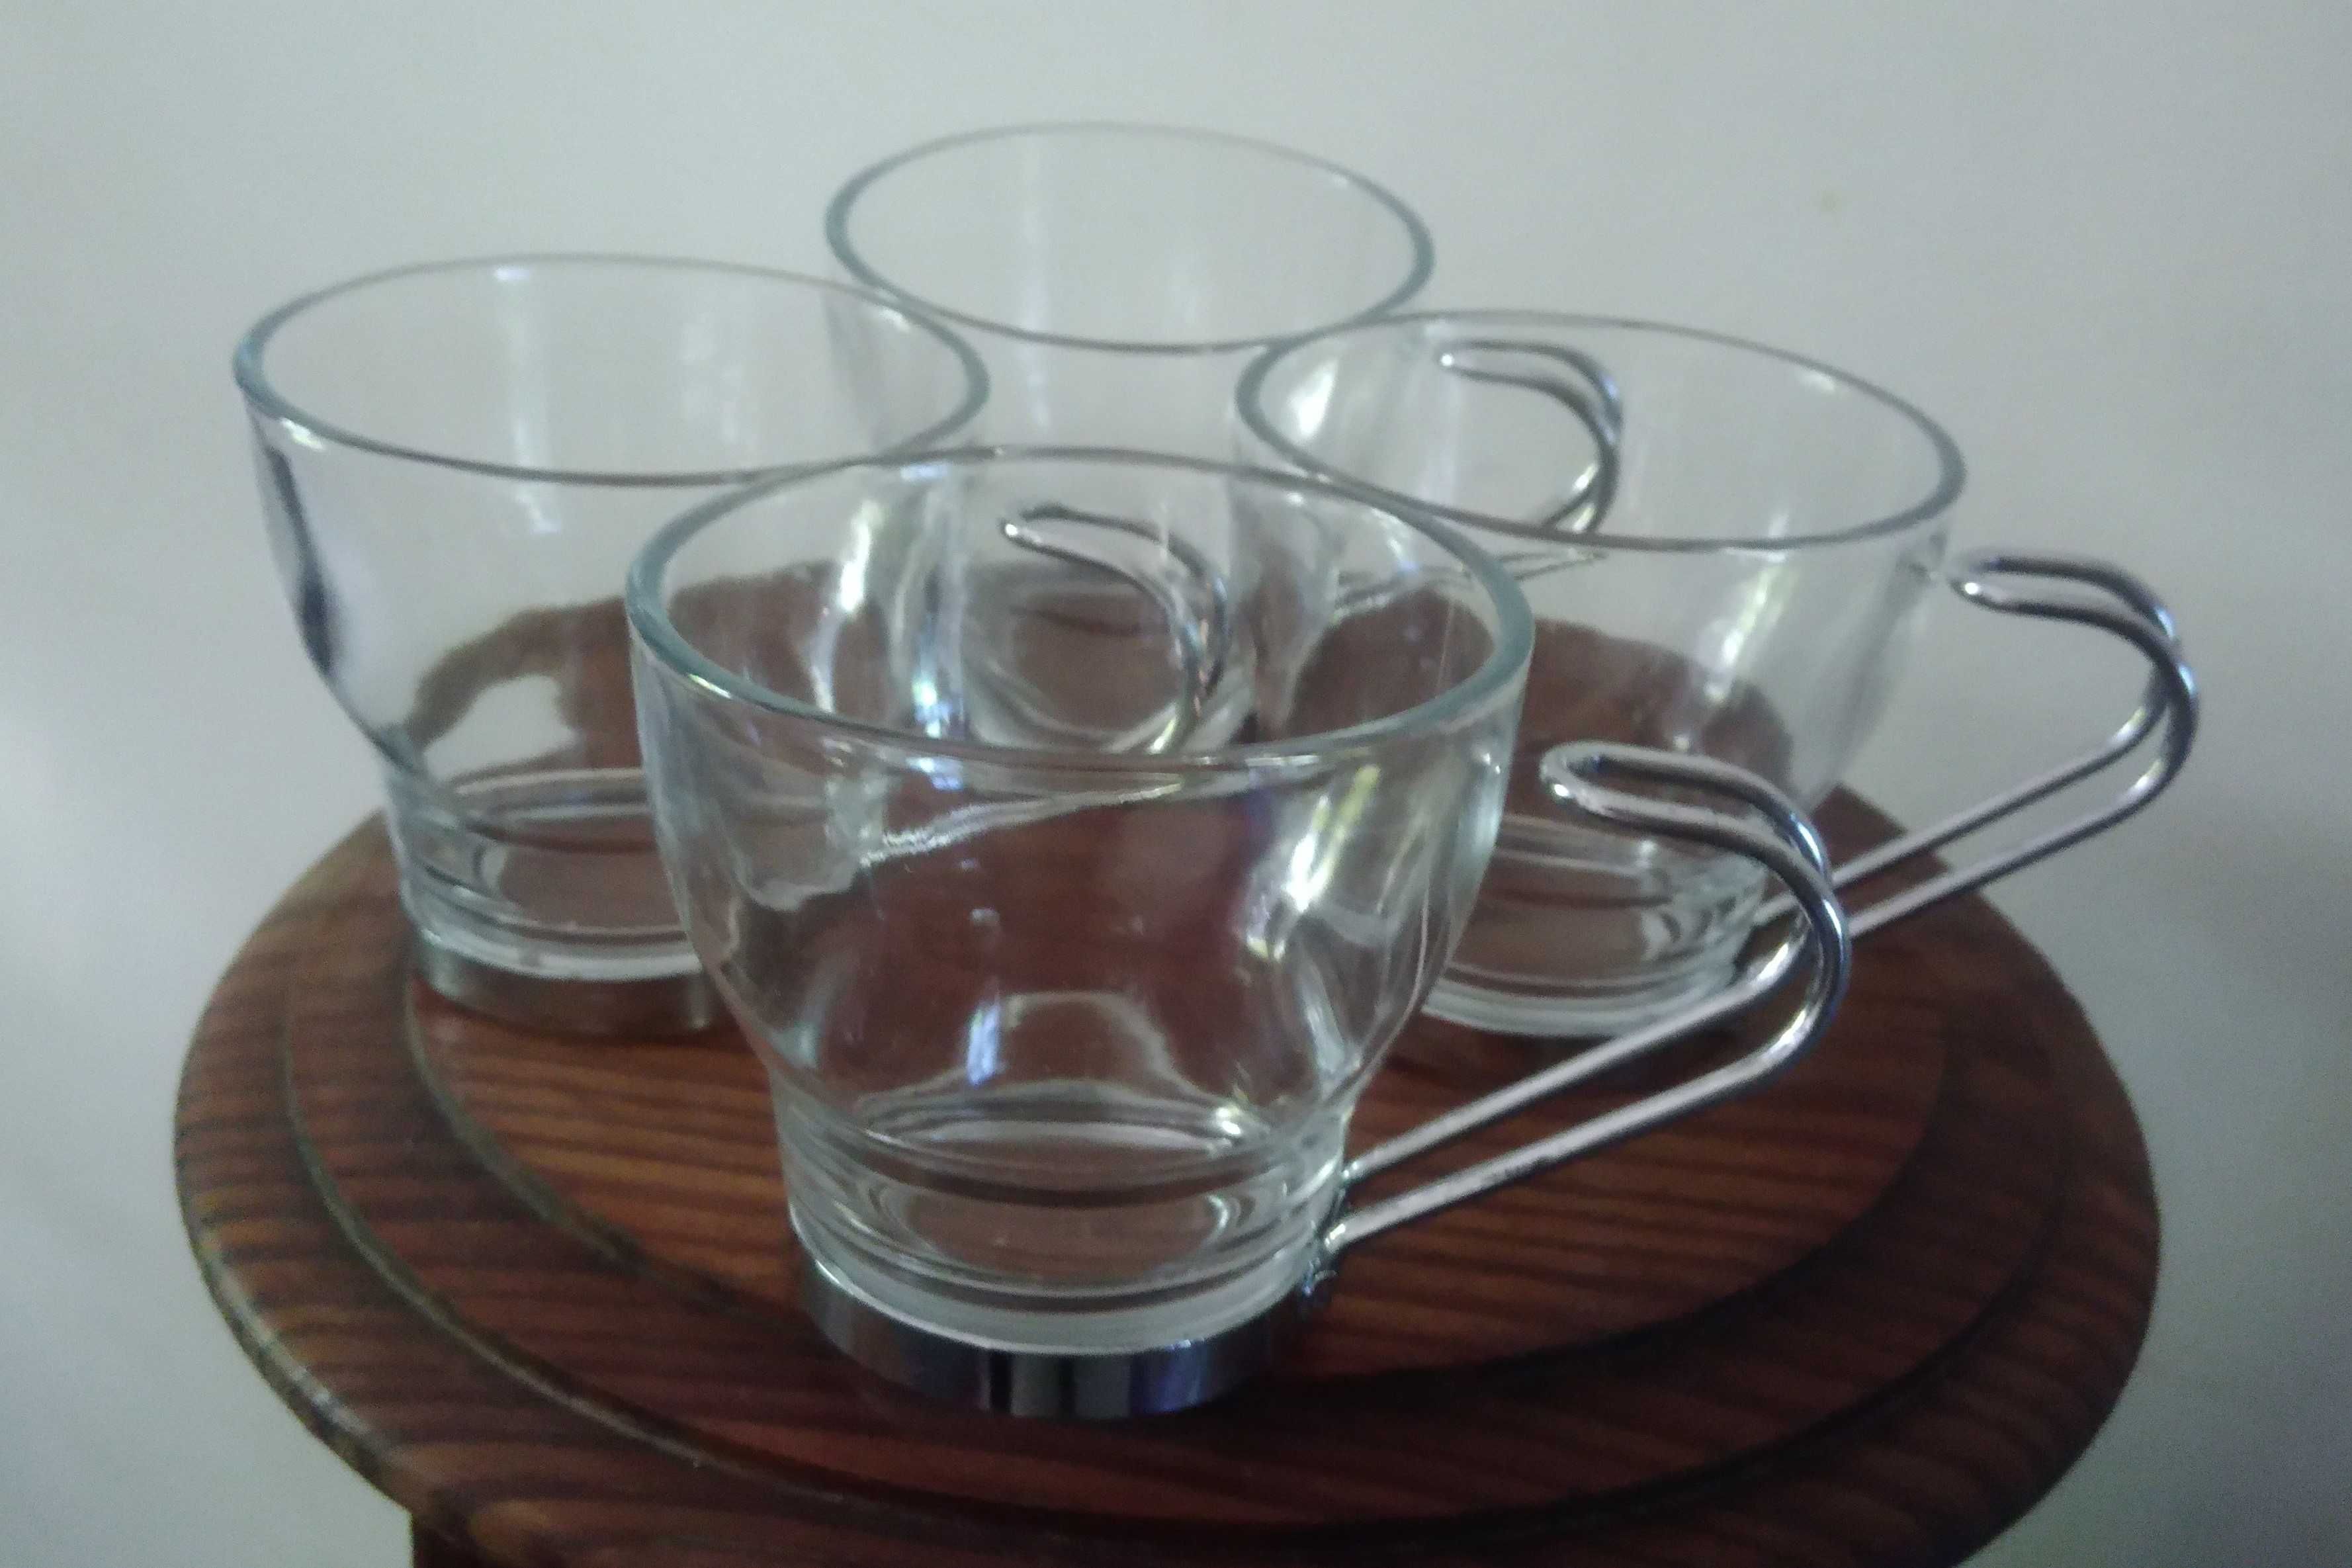 Chávenas (3) de café, vidro e metal, design moderno, estado impecável